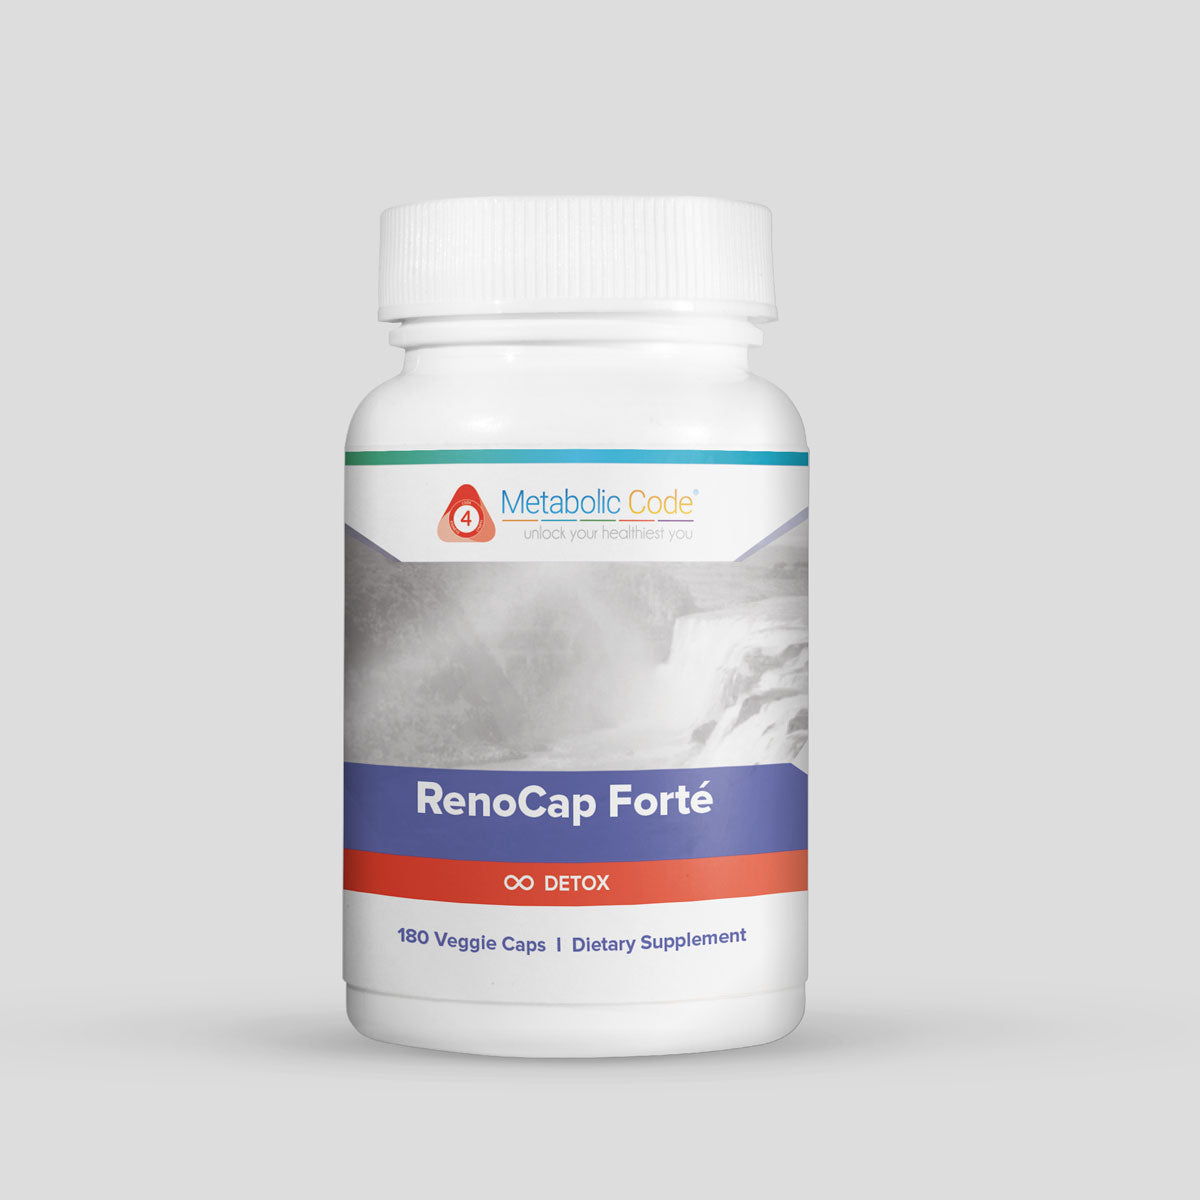 RenoCap Forté - LaValle Performance Health